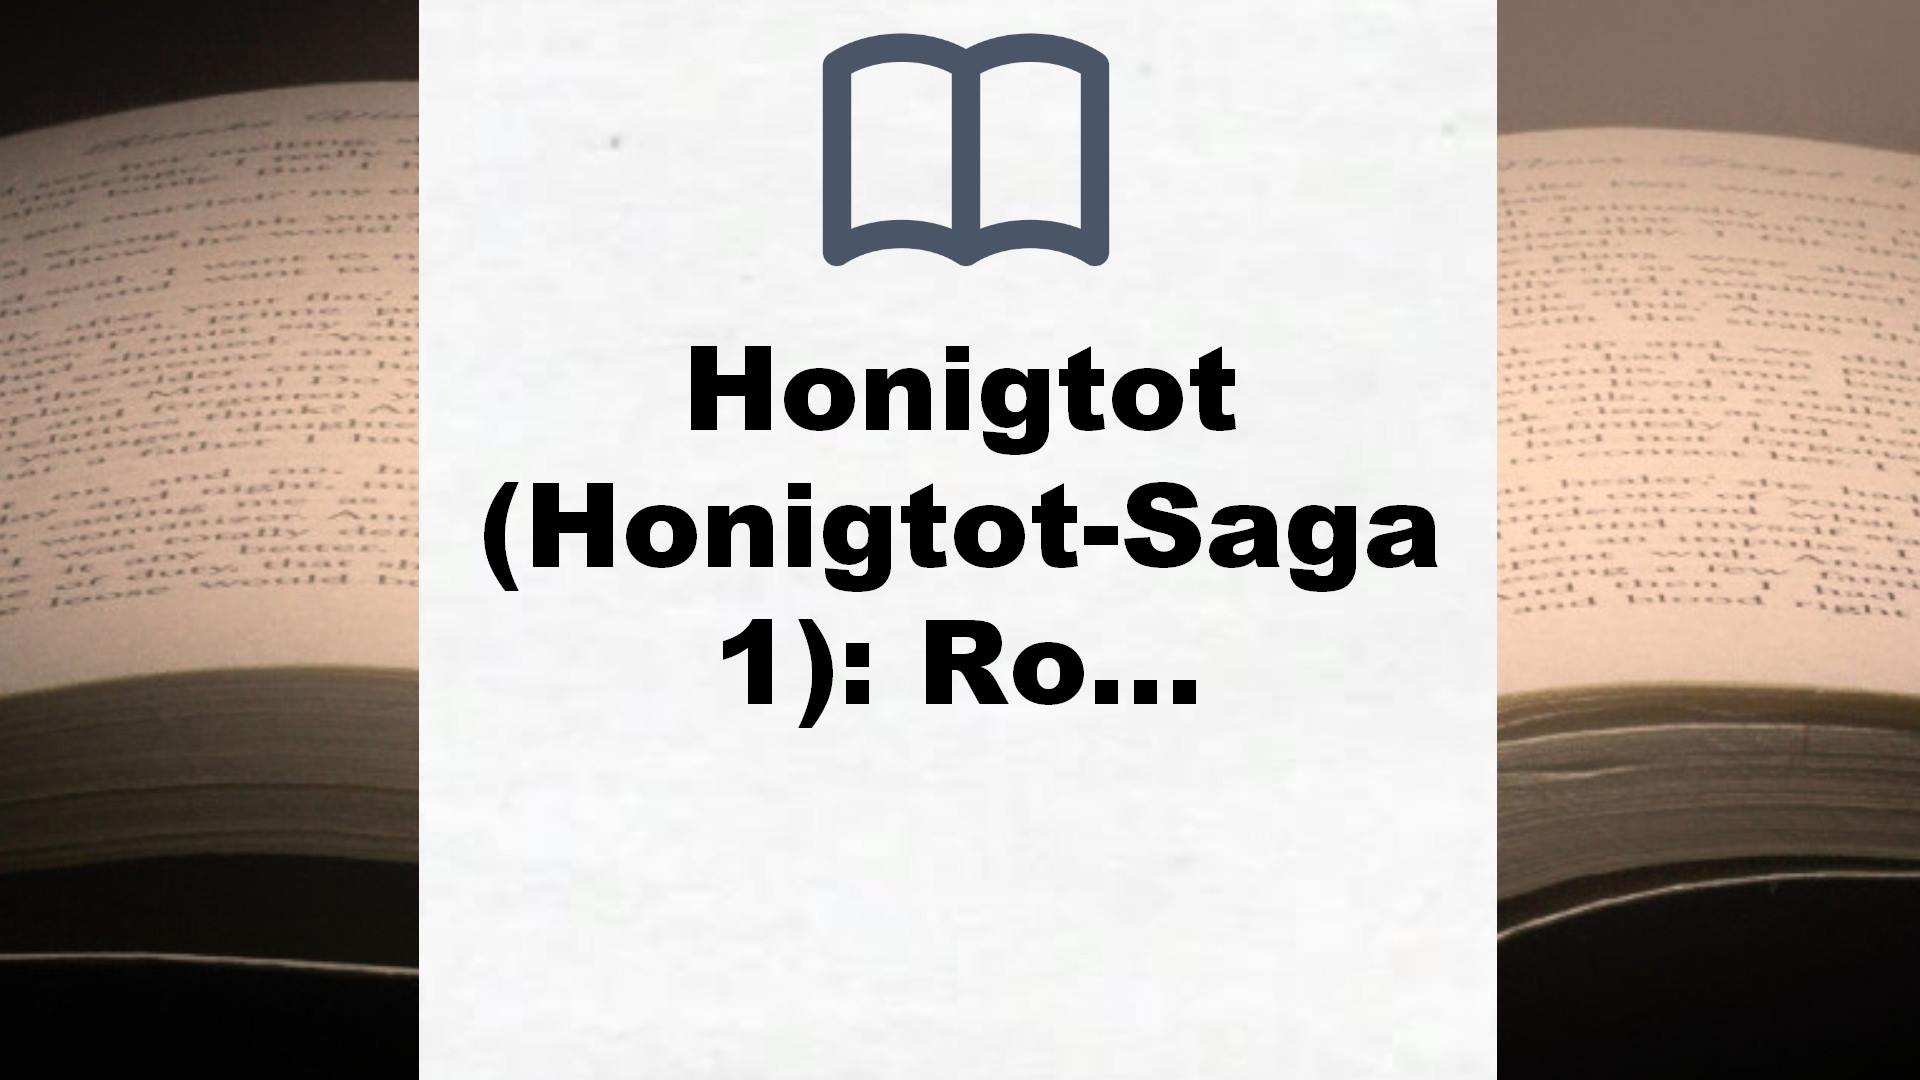 Honigtot (Honigtot-Saga 1): Roman – Buchrezension